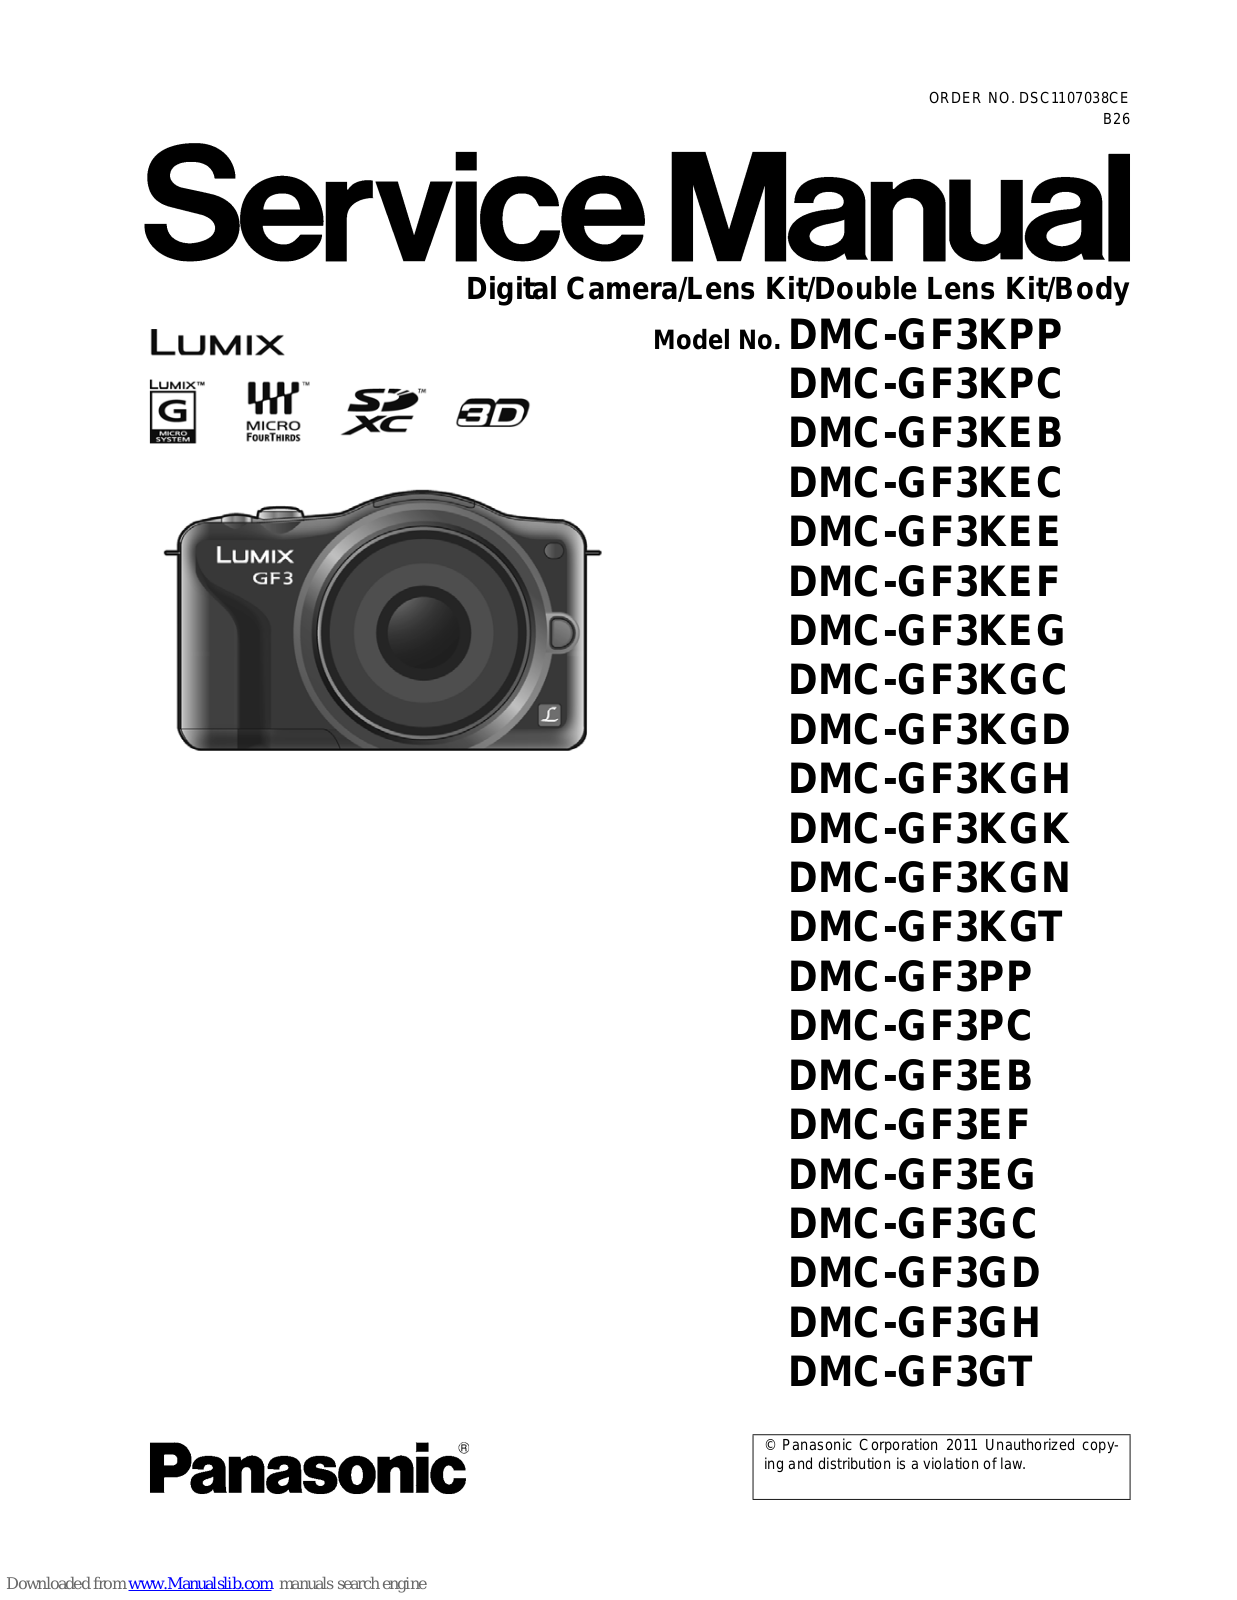 Panasonic Lumix DMC-GF3KPC, Lumix DMC-GF3KEE, Lumix DMC-GF3KEB, Lumix DMC-GF3KEC, Lumix DMC-GF3KEF Service Manual